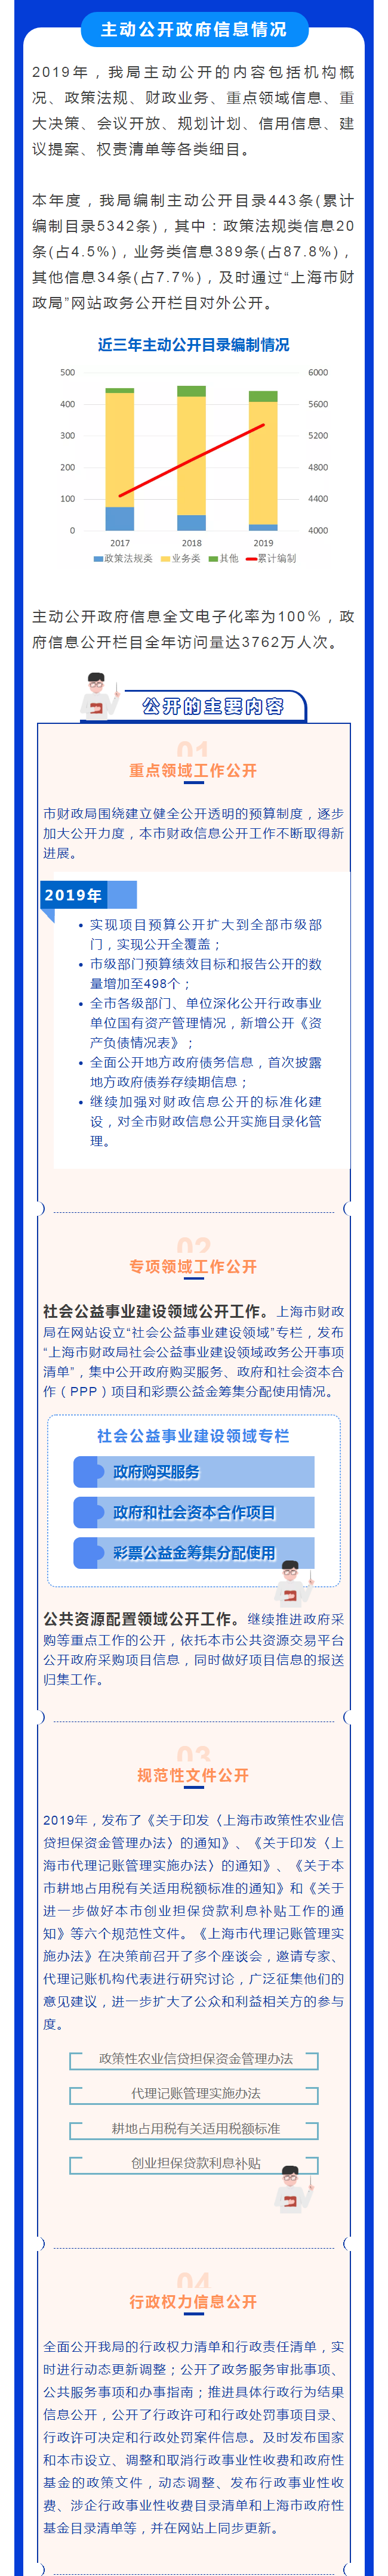 2019年上海市财政局政府信息公开工作年度报告-图解2.png